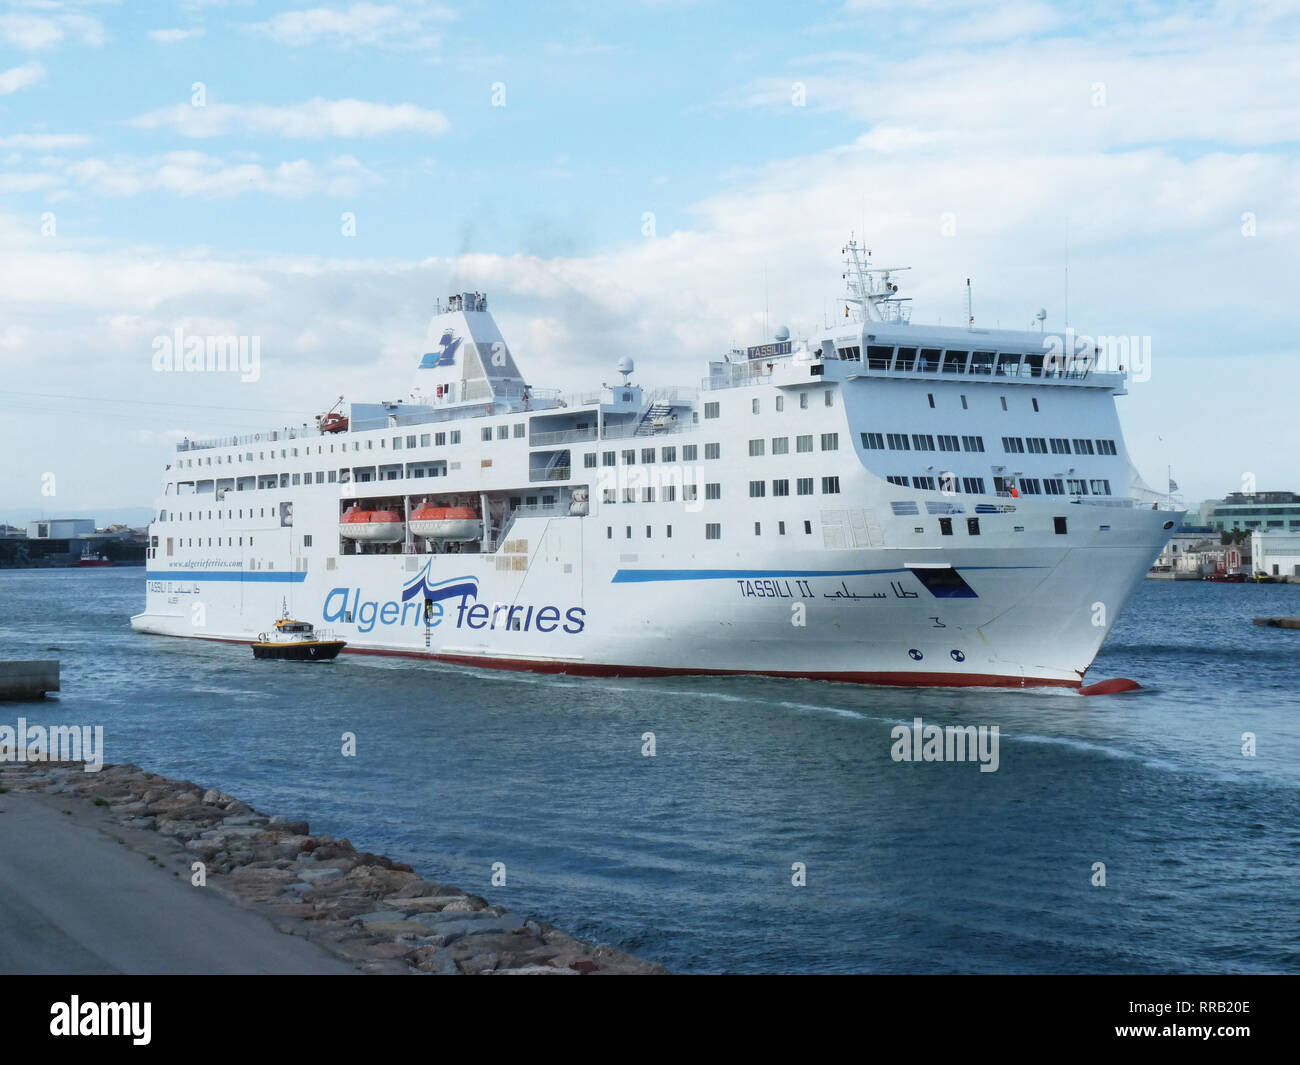 Fähre Tassili II der Algerie Ferries Unternehmen verlässt den Hafen von Barcelona. Juni 12, 2018. Stockfoto